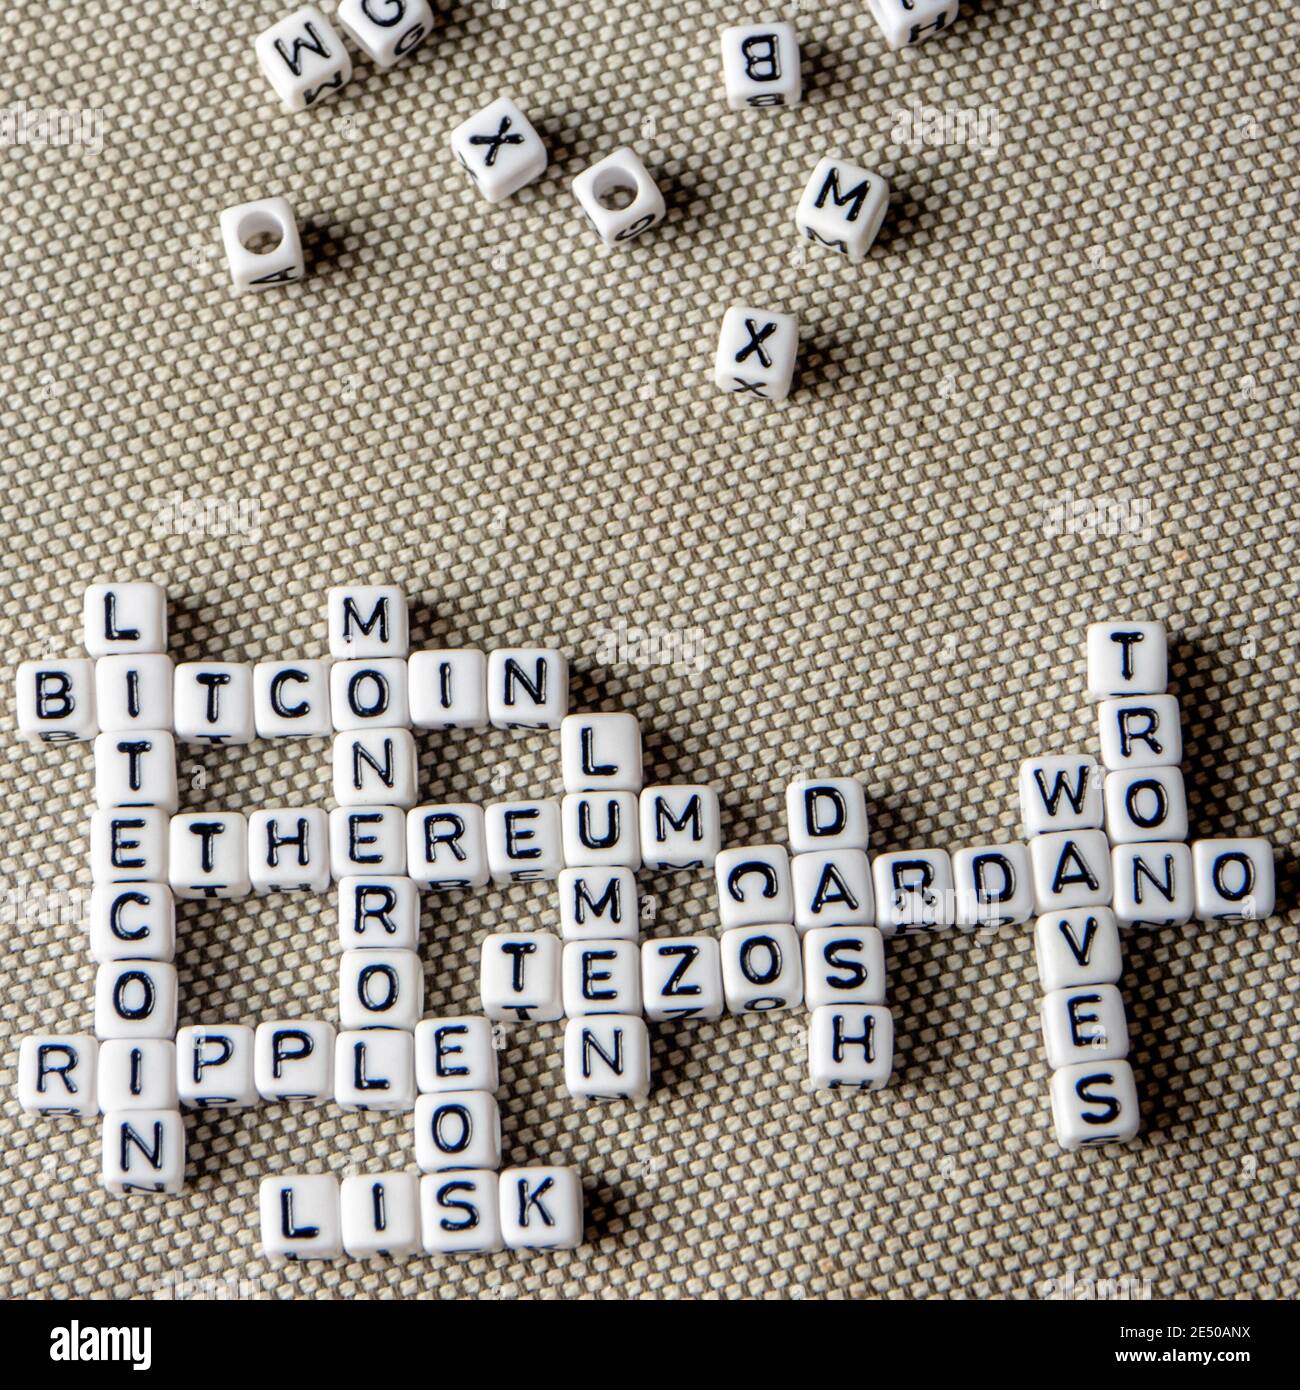 ensemble de pièces de crypto populaires mots formant un mot-clé thématique fait de cubes blancs avec des lettres majuscules noires, bitcoin, altcoins, éthereum, ondulation, lu Banque D'Images